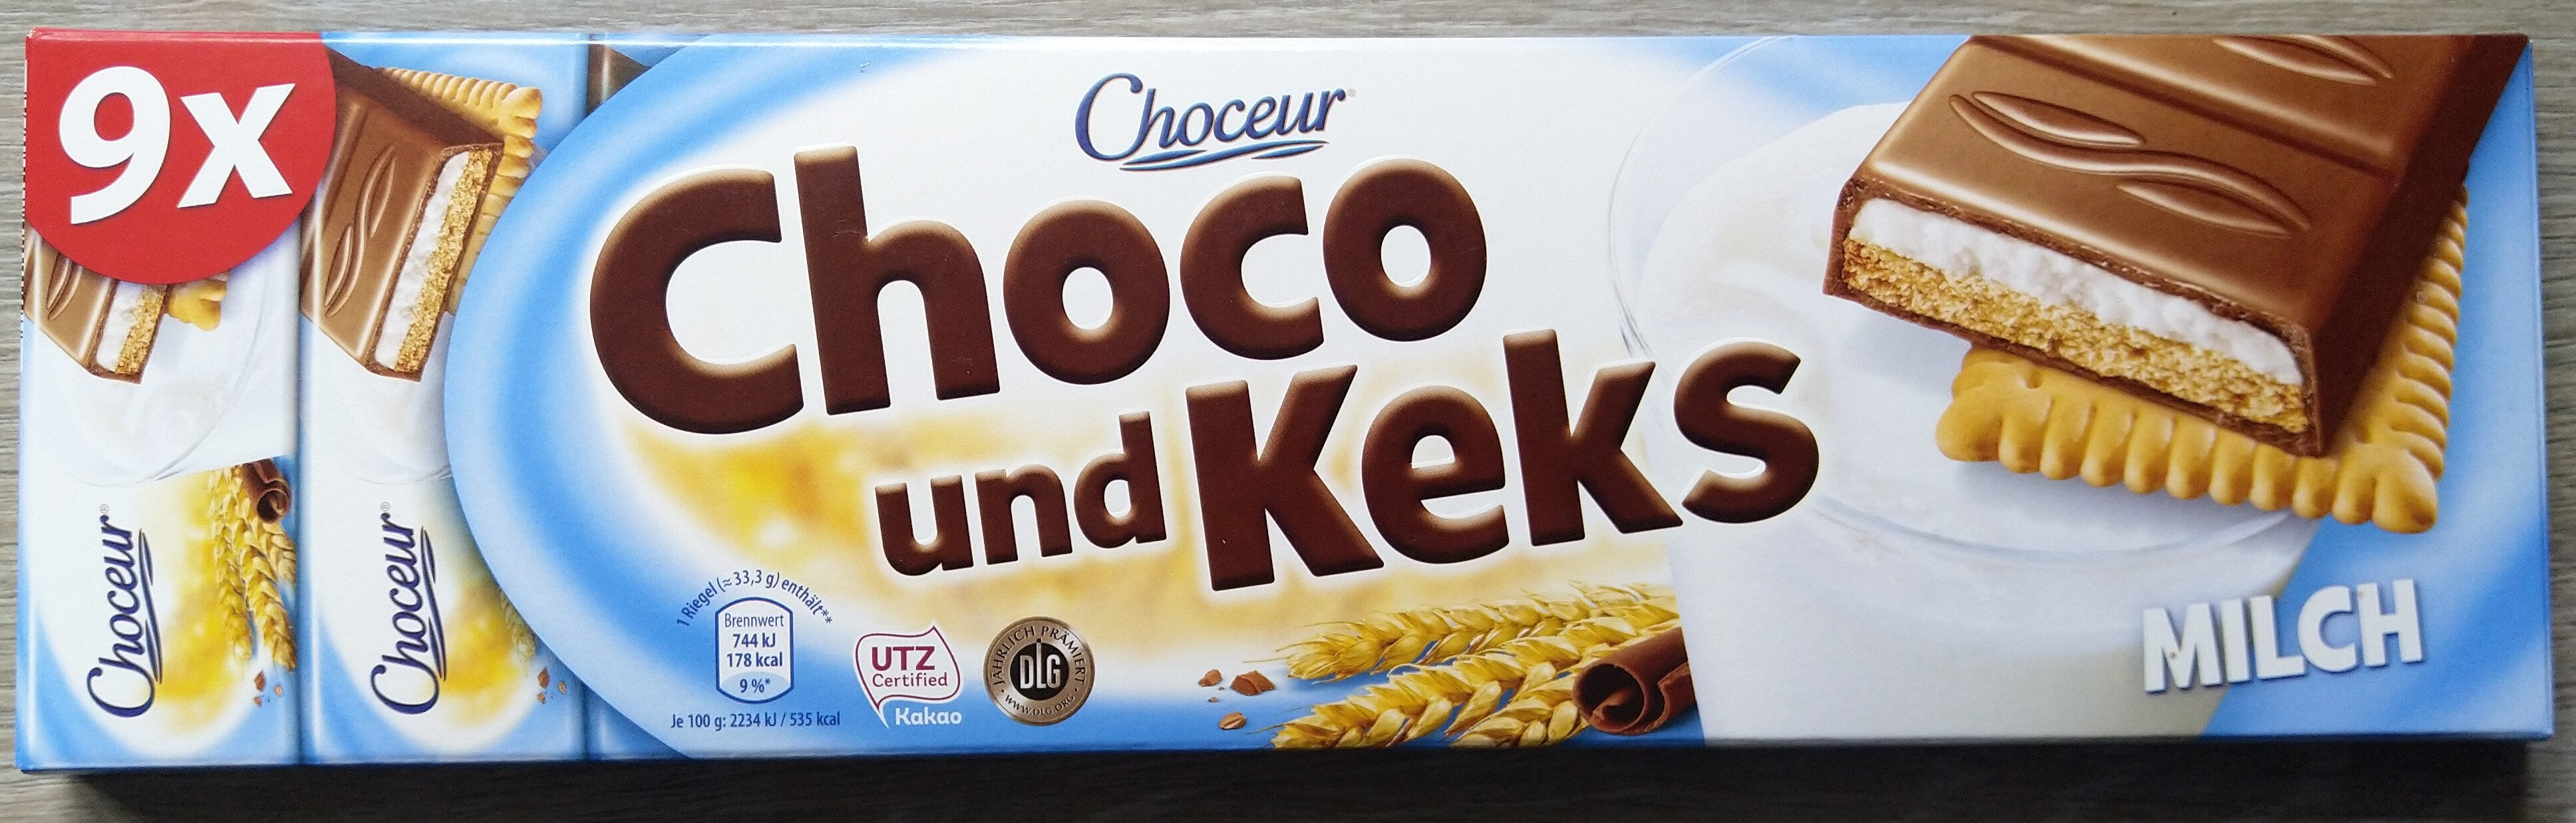 Choco und Keks Milch - Product - de